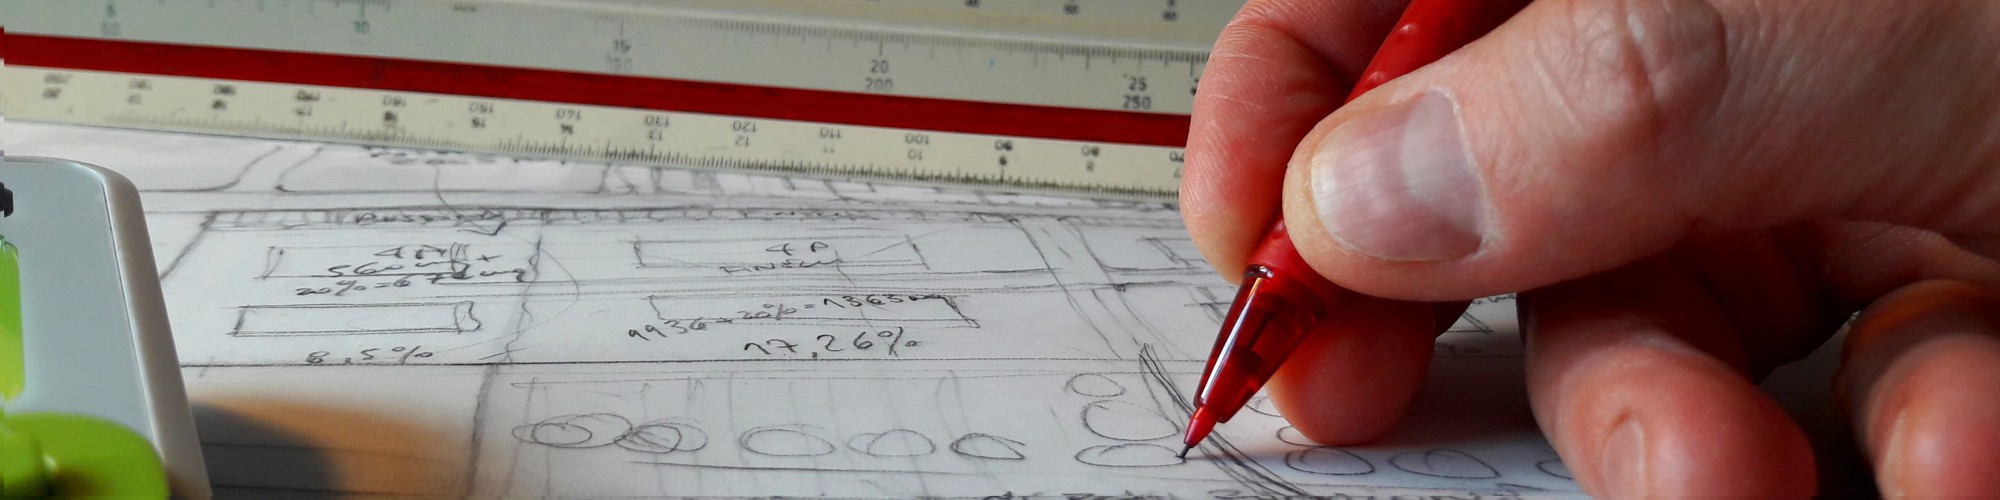 Bild: Hand mit Stift und Maßstabslinieal auf Bauzeichnung